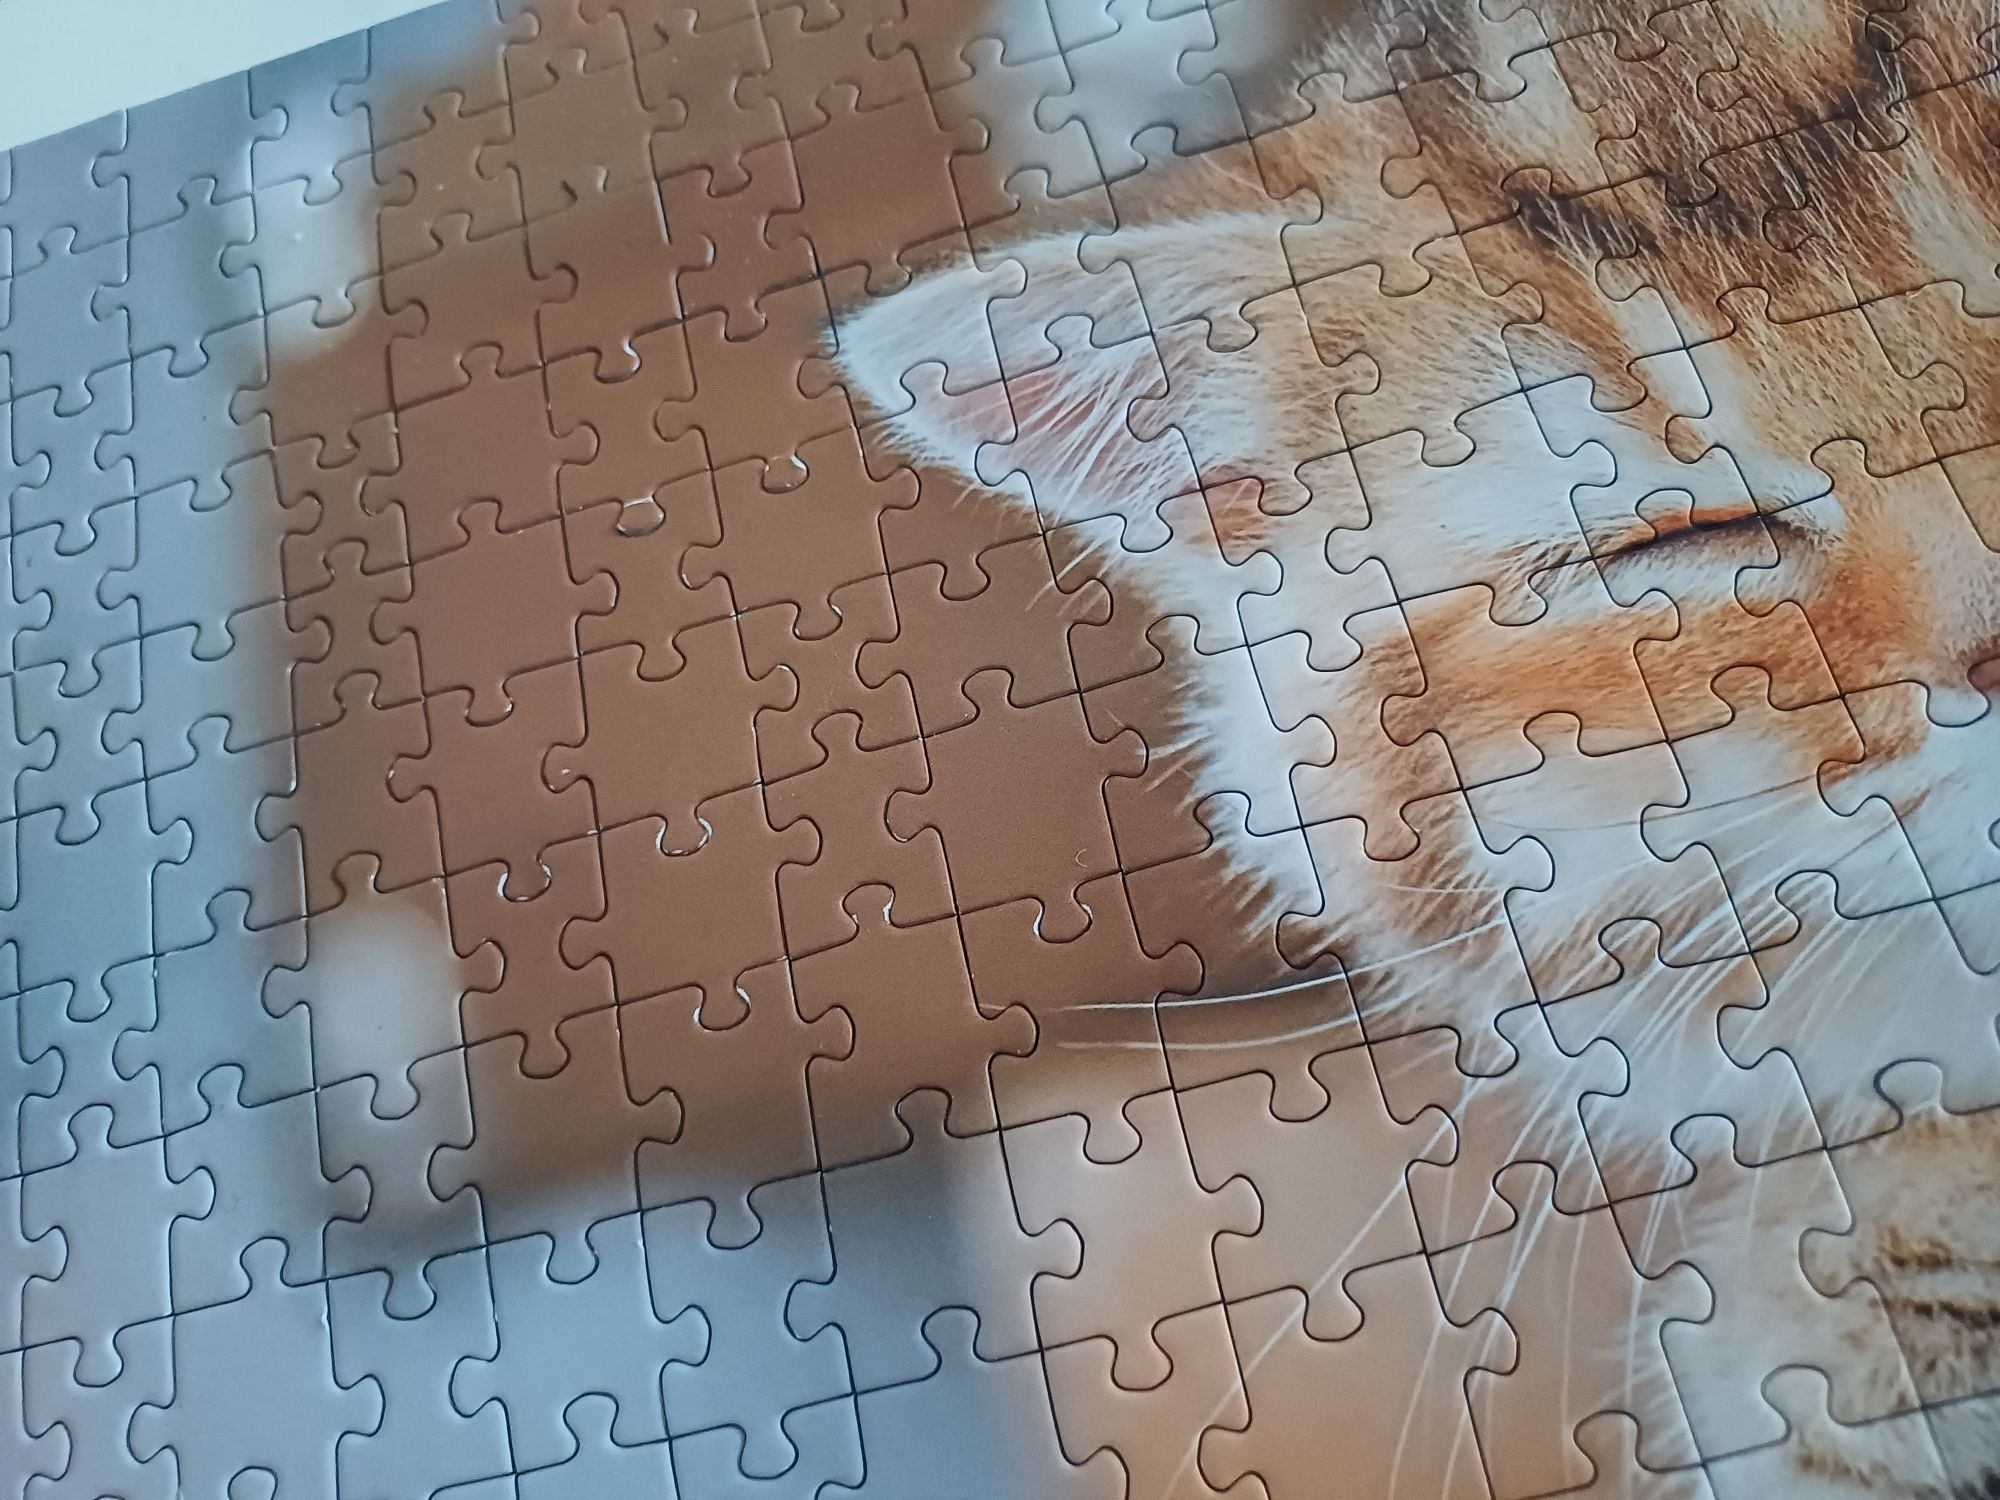 Puzzle Trefl 2x500,1000 kotki edycja limitowana